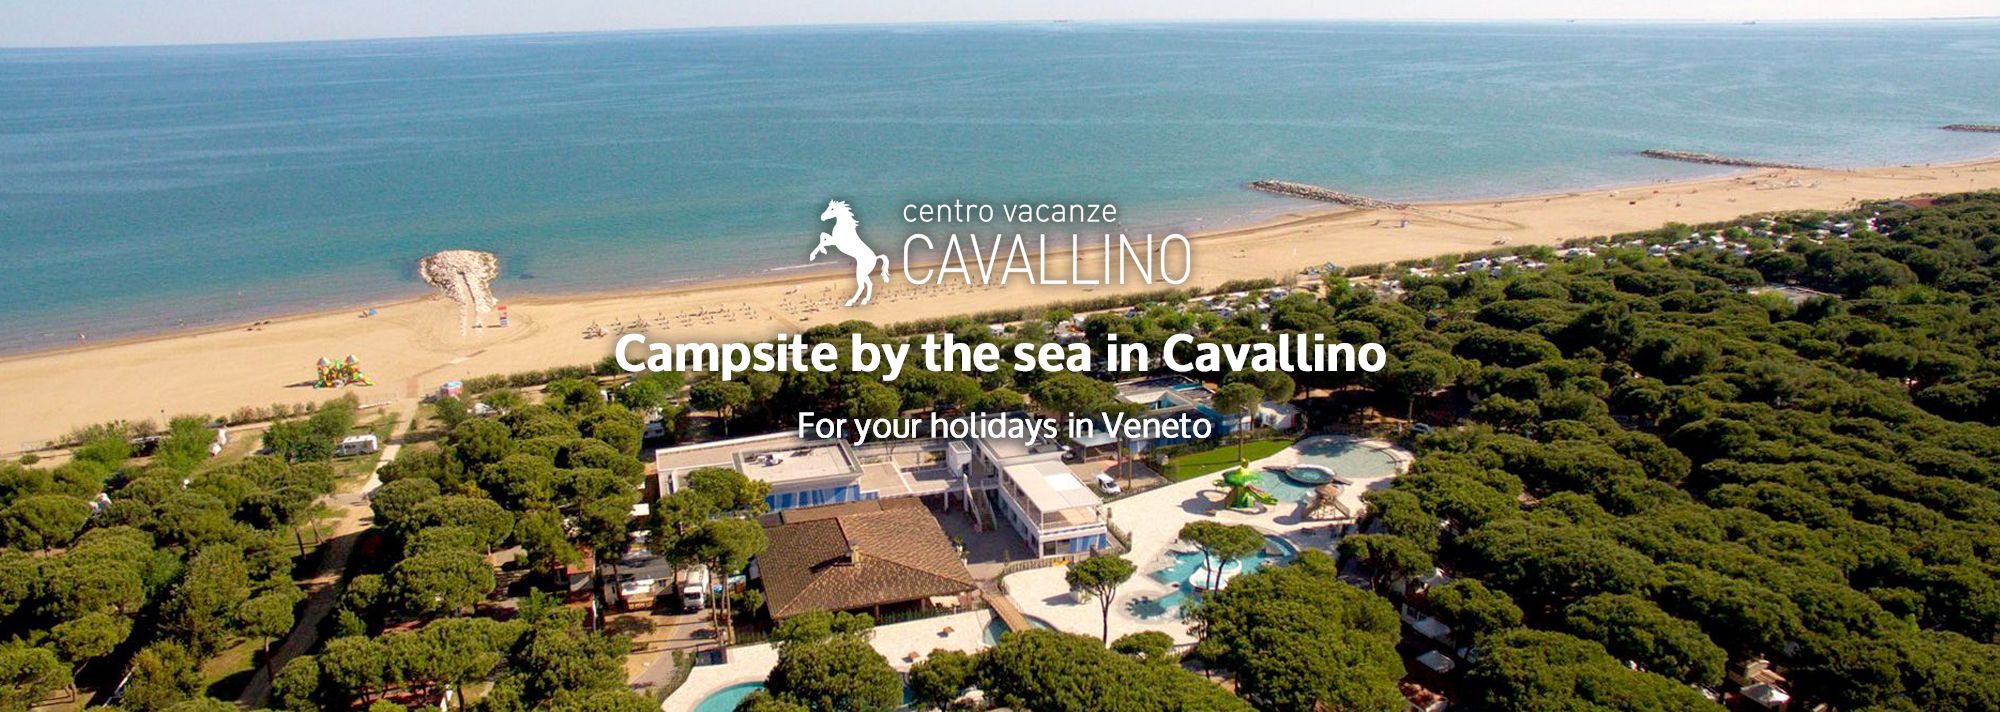 www.campingcavallino.com/en/